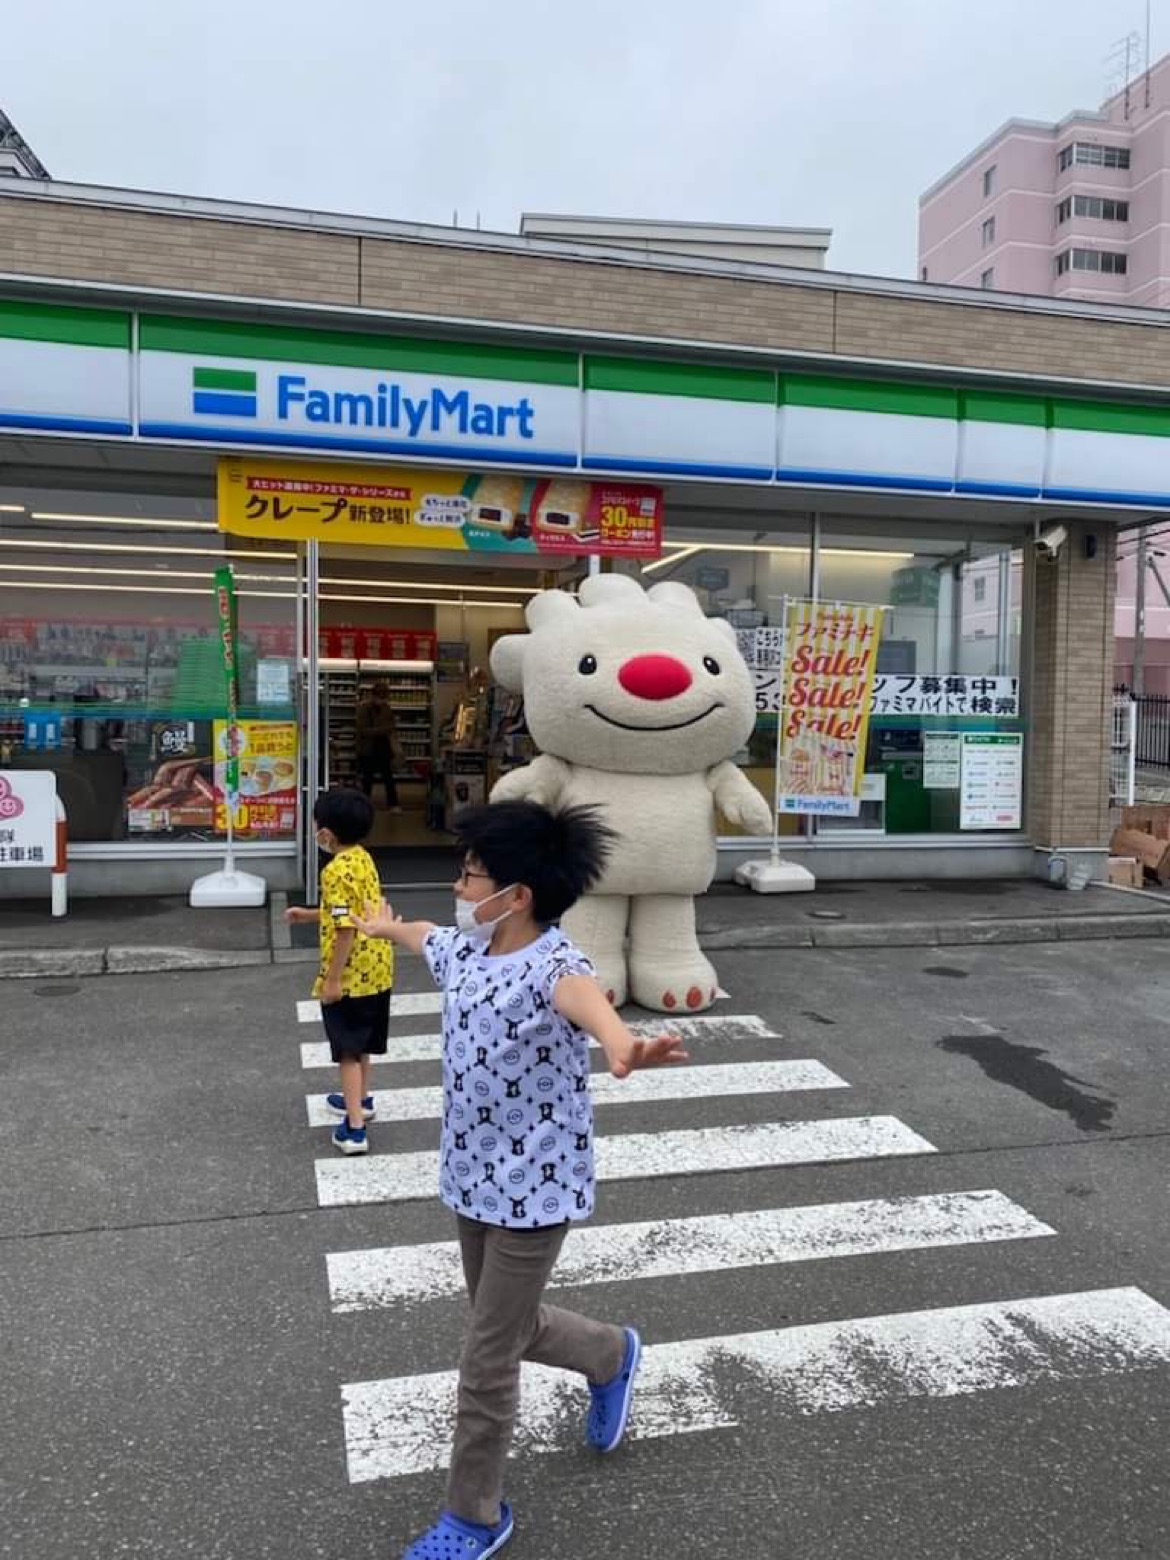 ファミリーマート札幌稲穂2条店